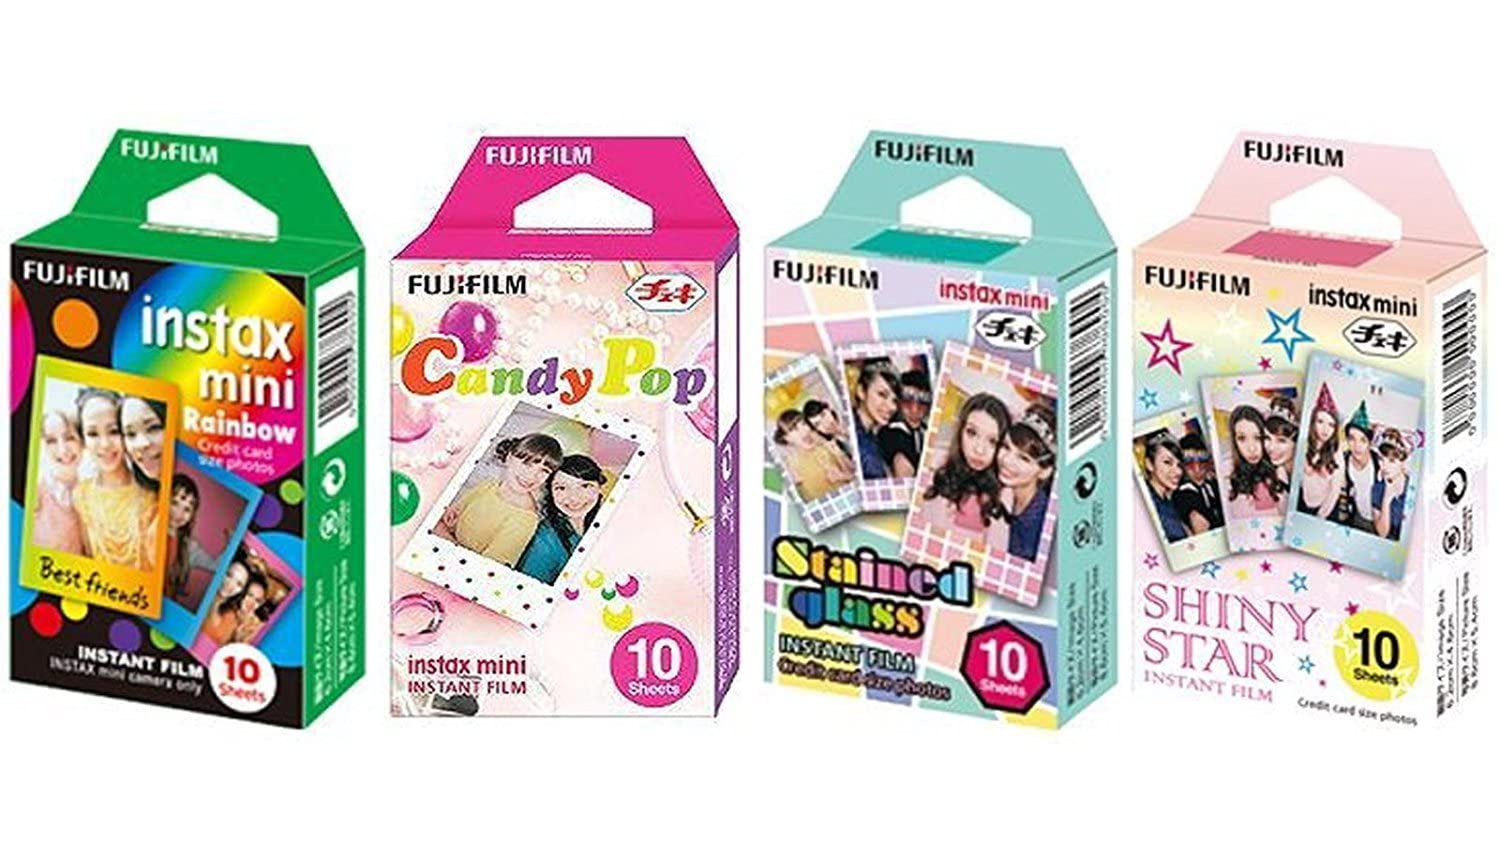 Fujifilm InstaX 迷你即时胶片彩虹、彩色玻璃、糖果流行和闪亮星星胶片 -10 张 X 4 套超值套装